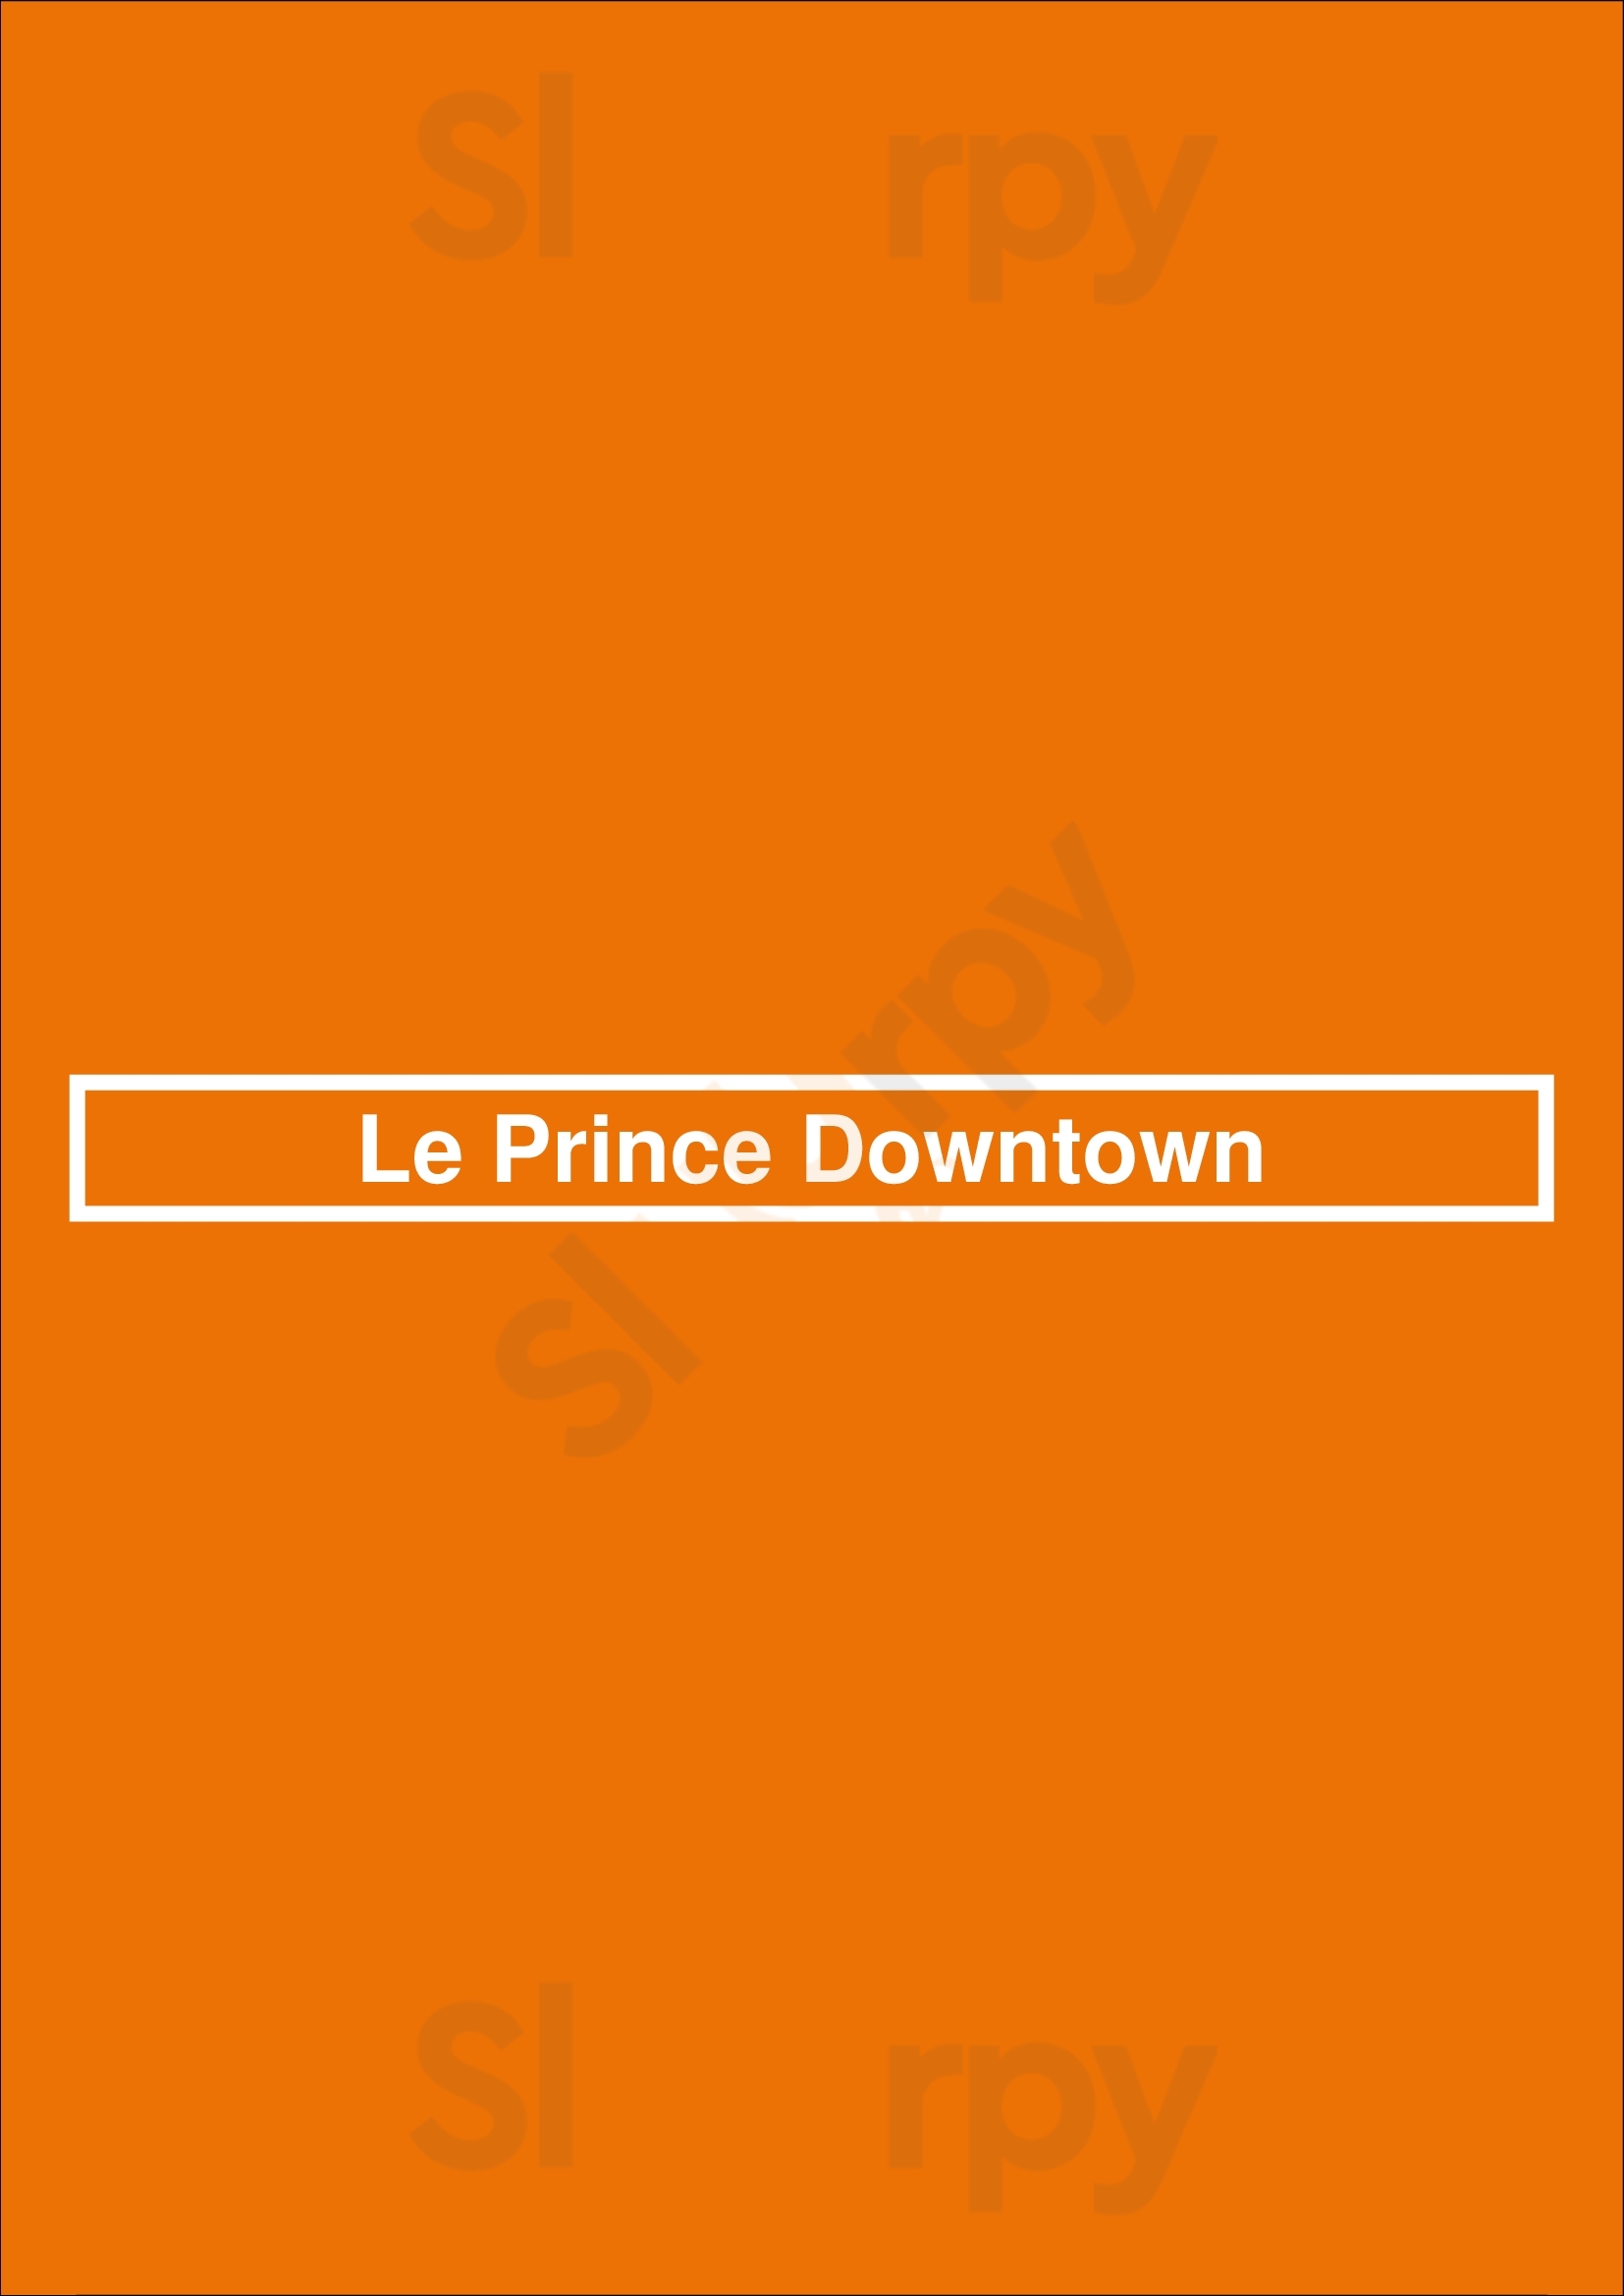 Le Prince Downtown Bruxelles Menu - 1